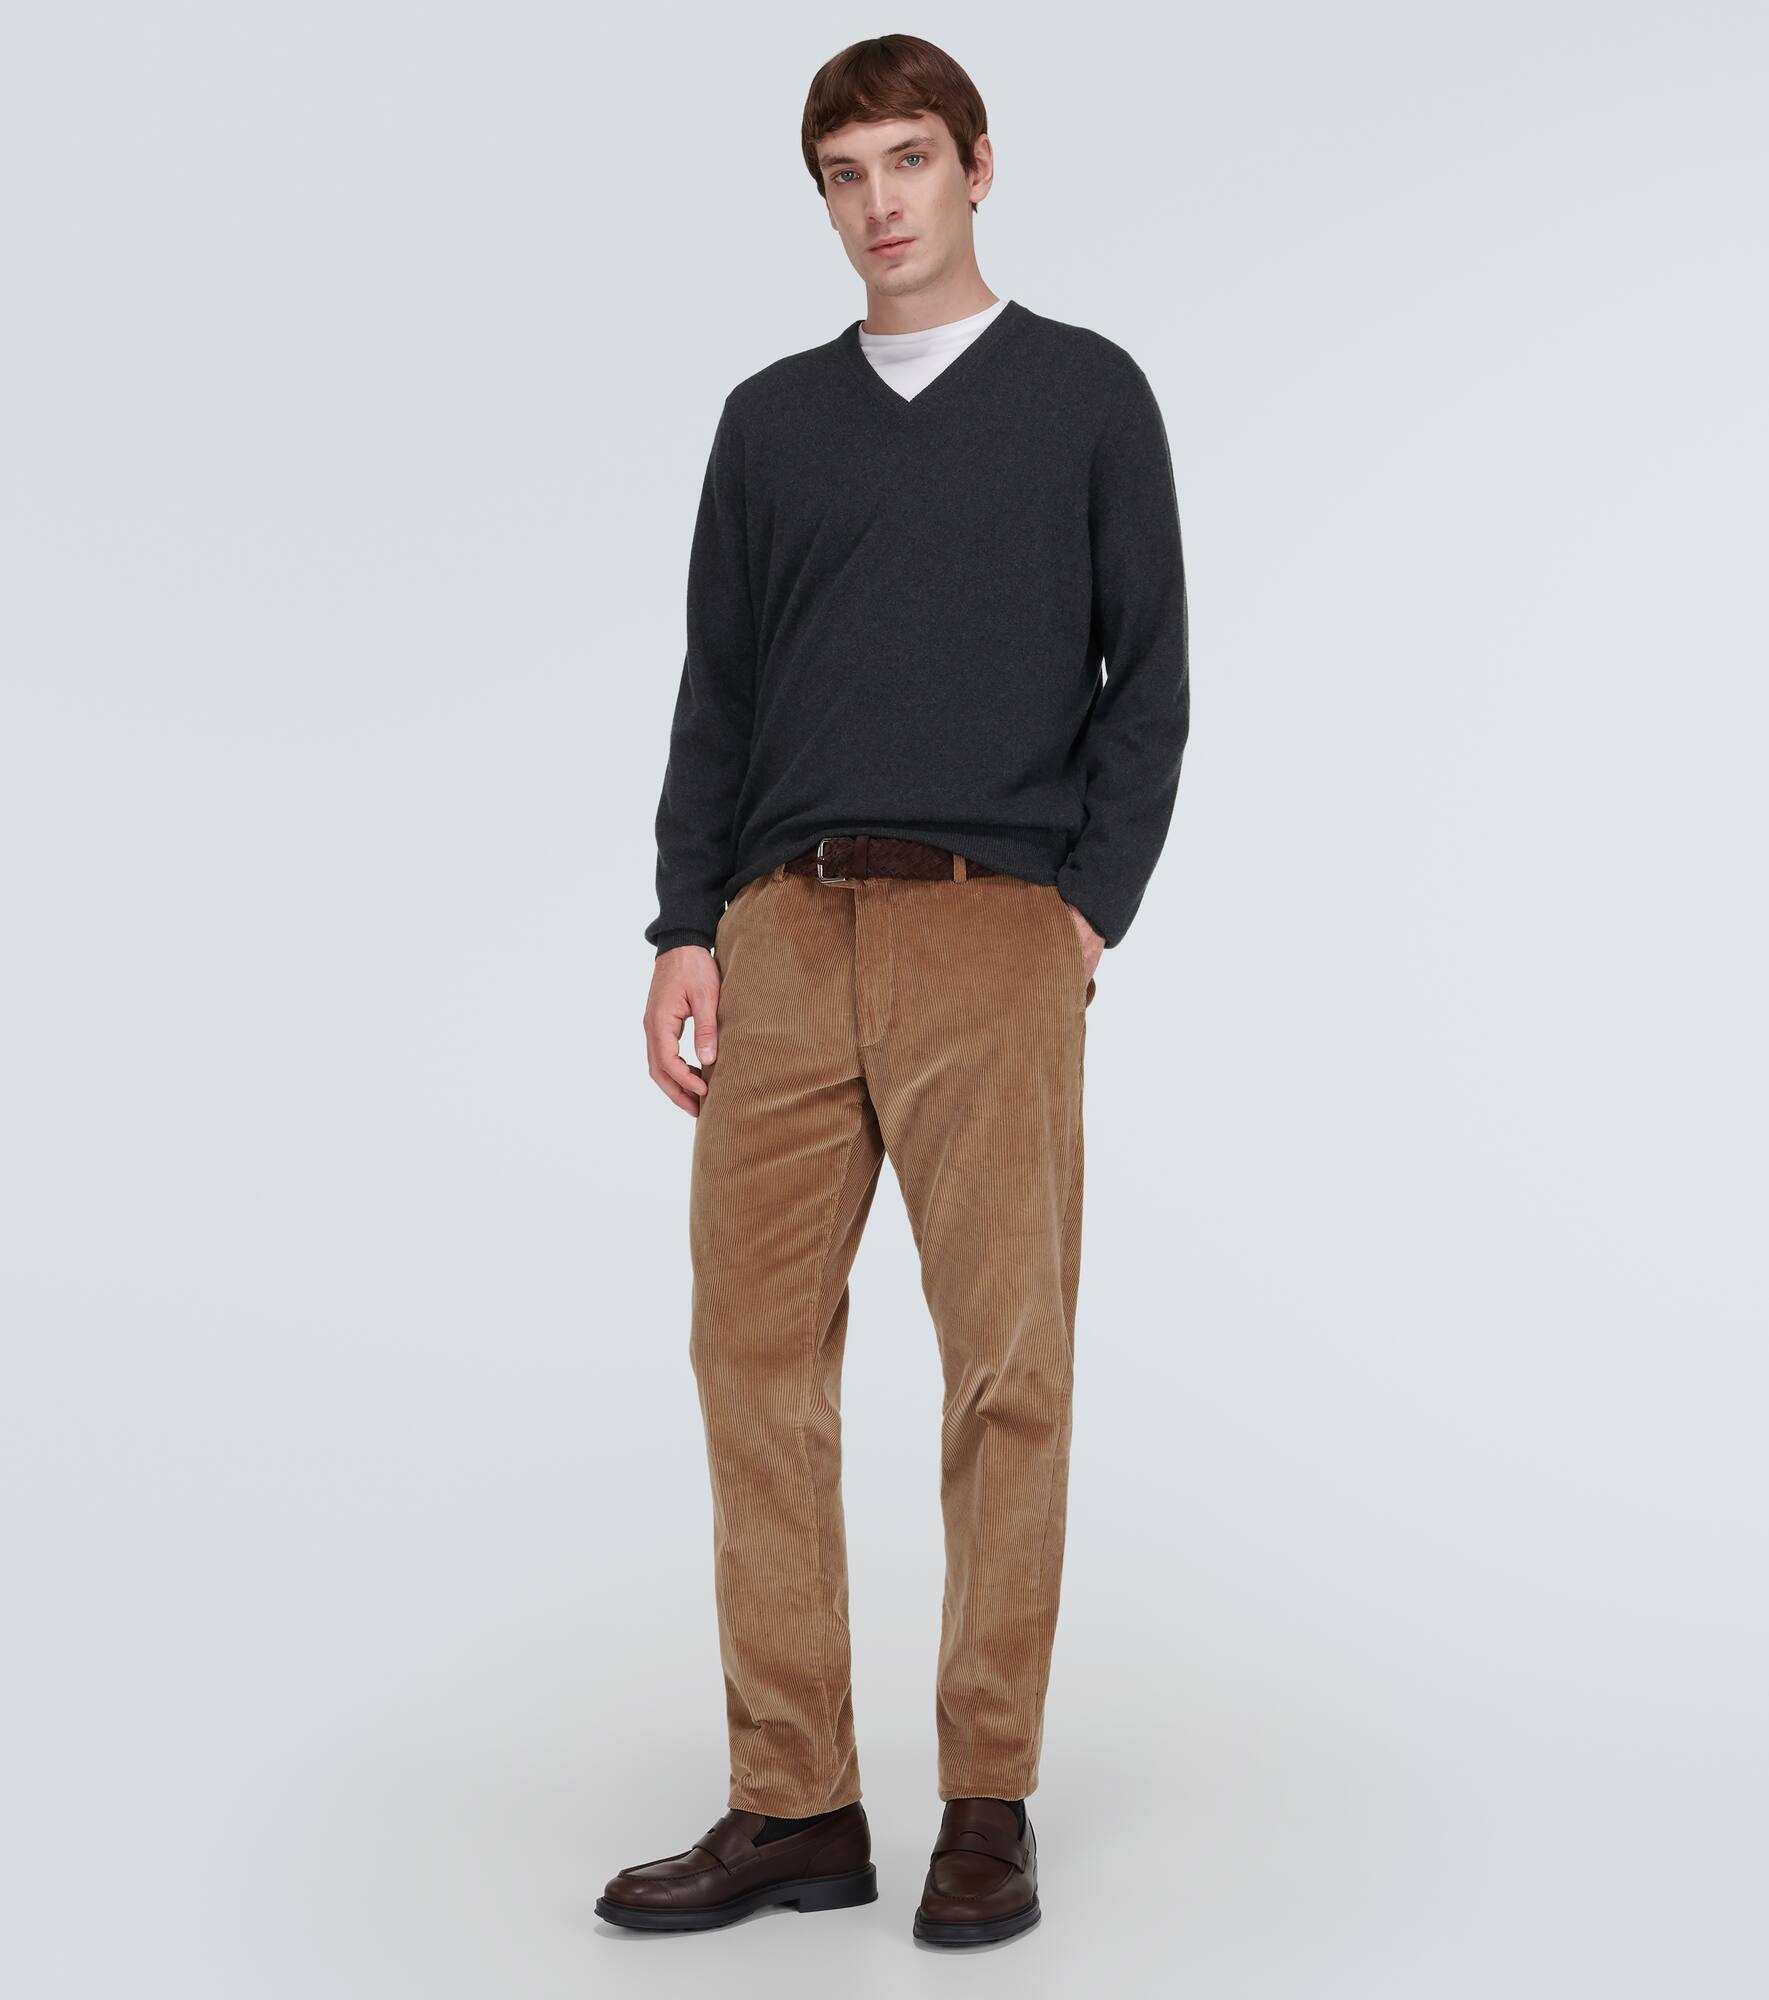 Scollo cashmere sweater - 2